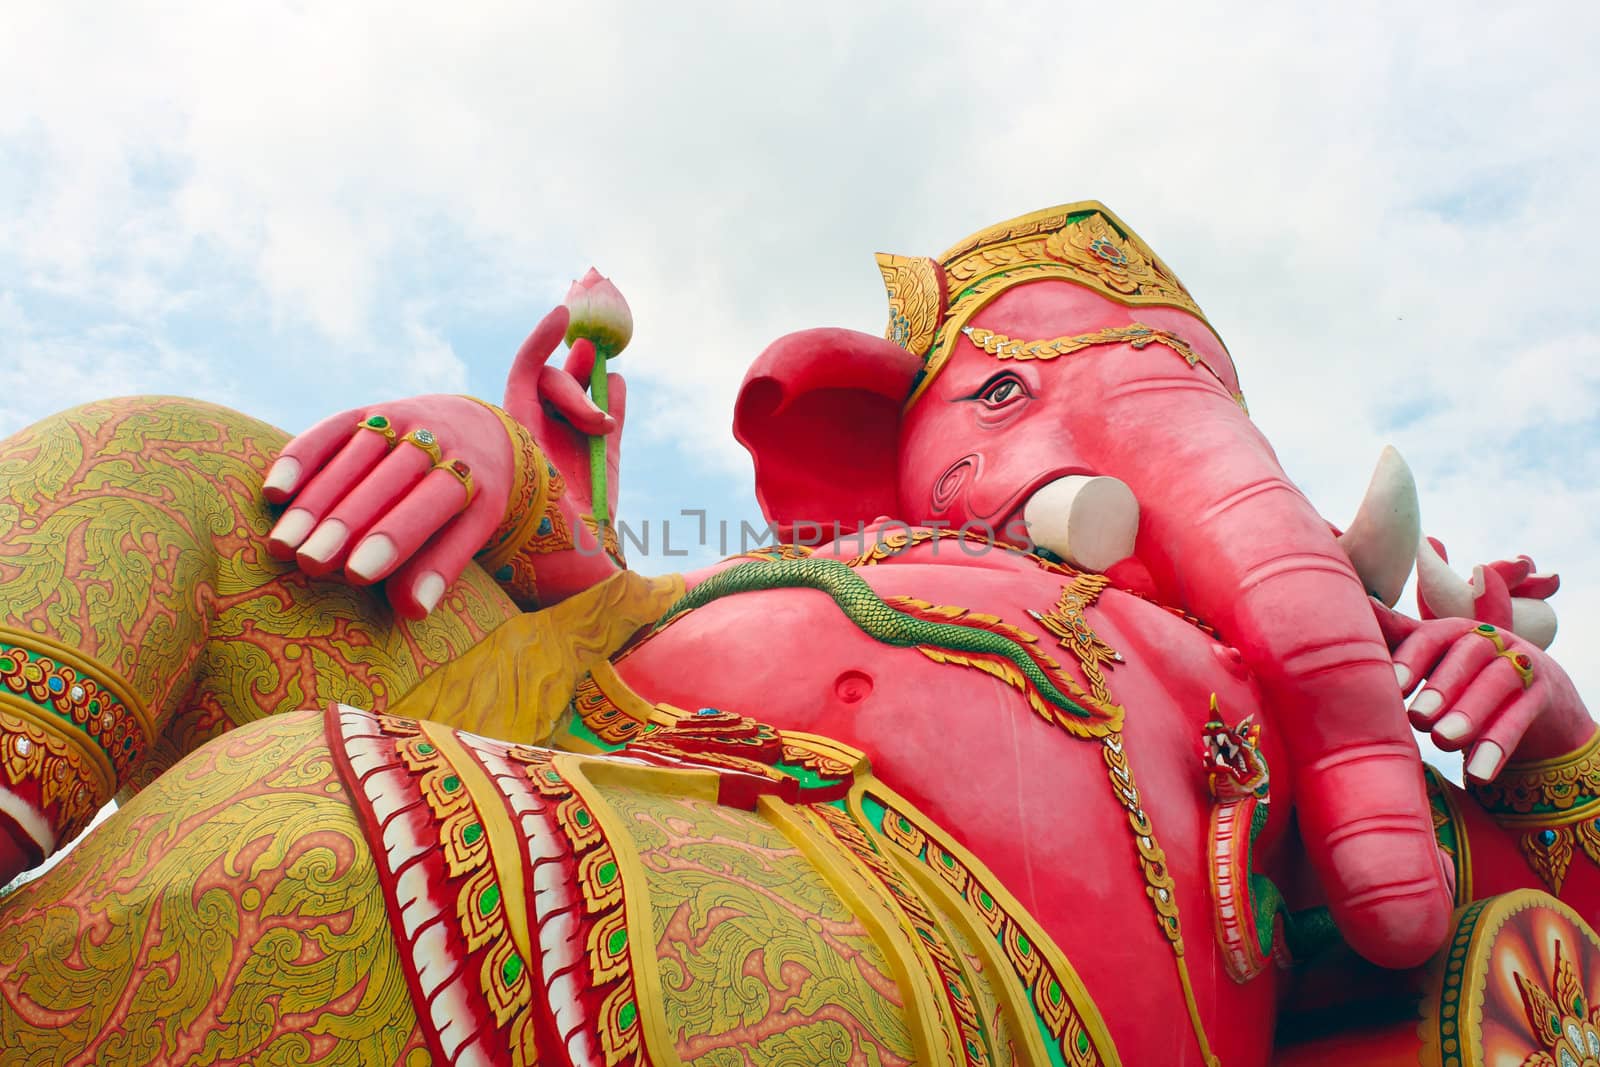 Ganesh statue by rawich06